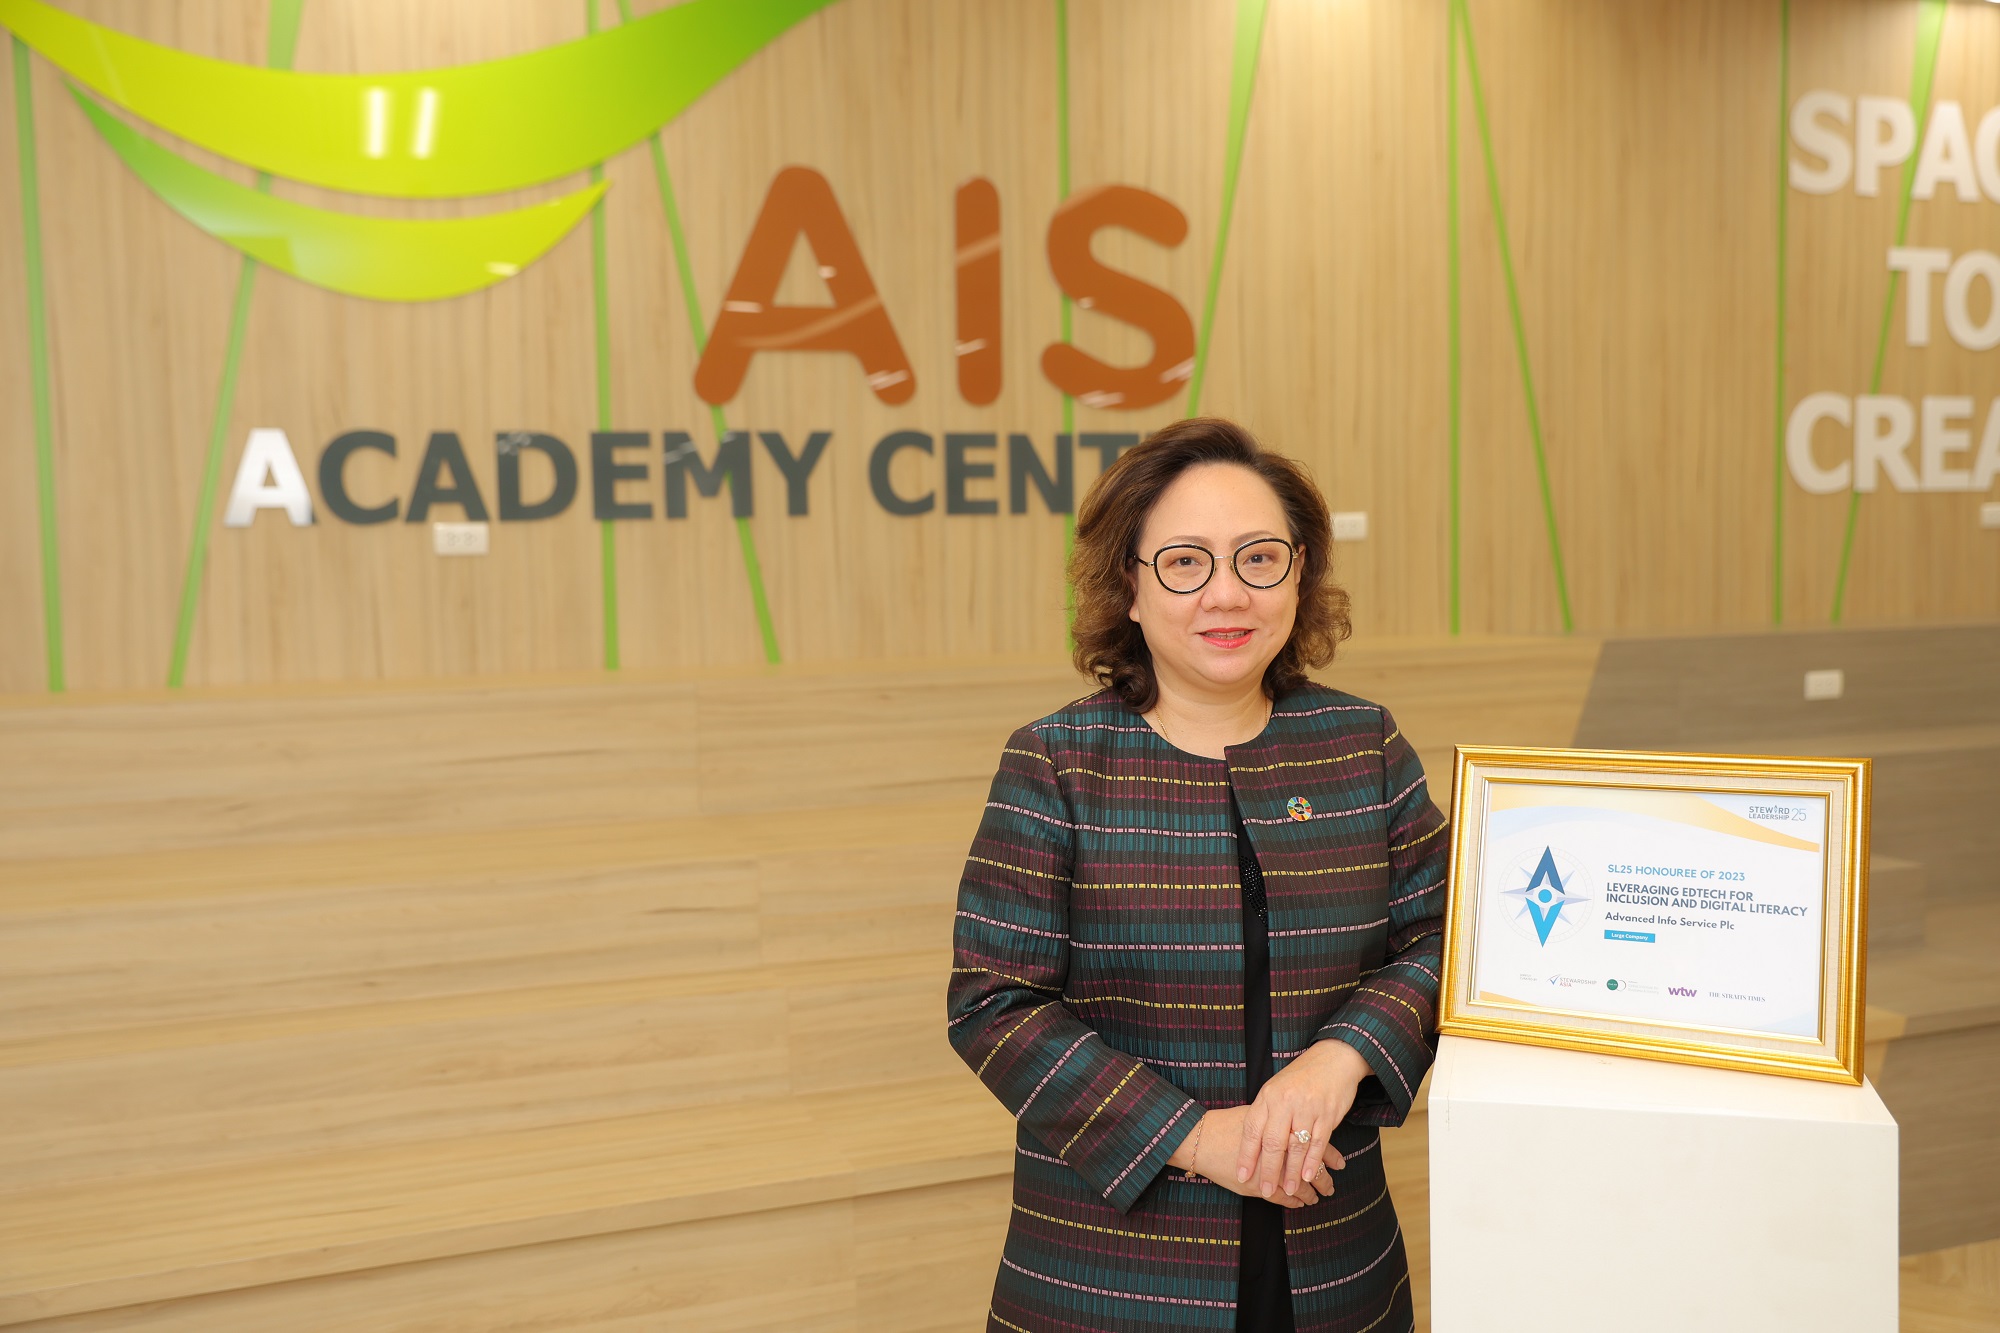 AIS Academy